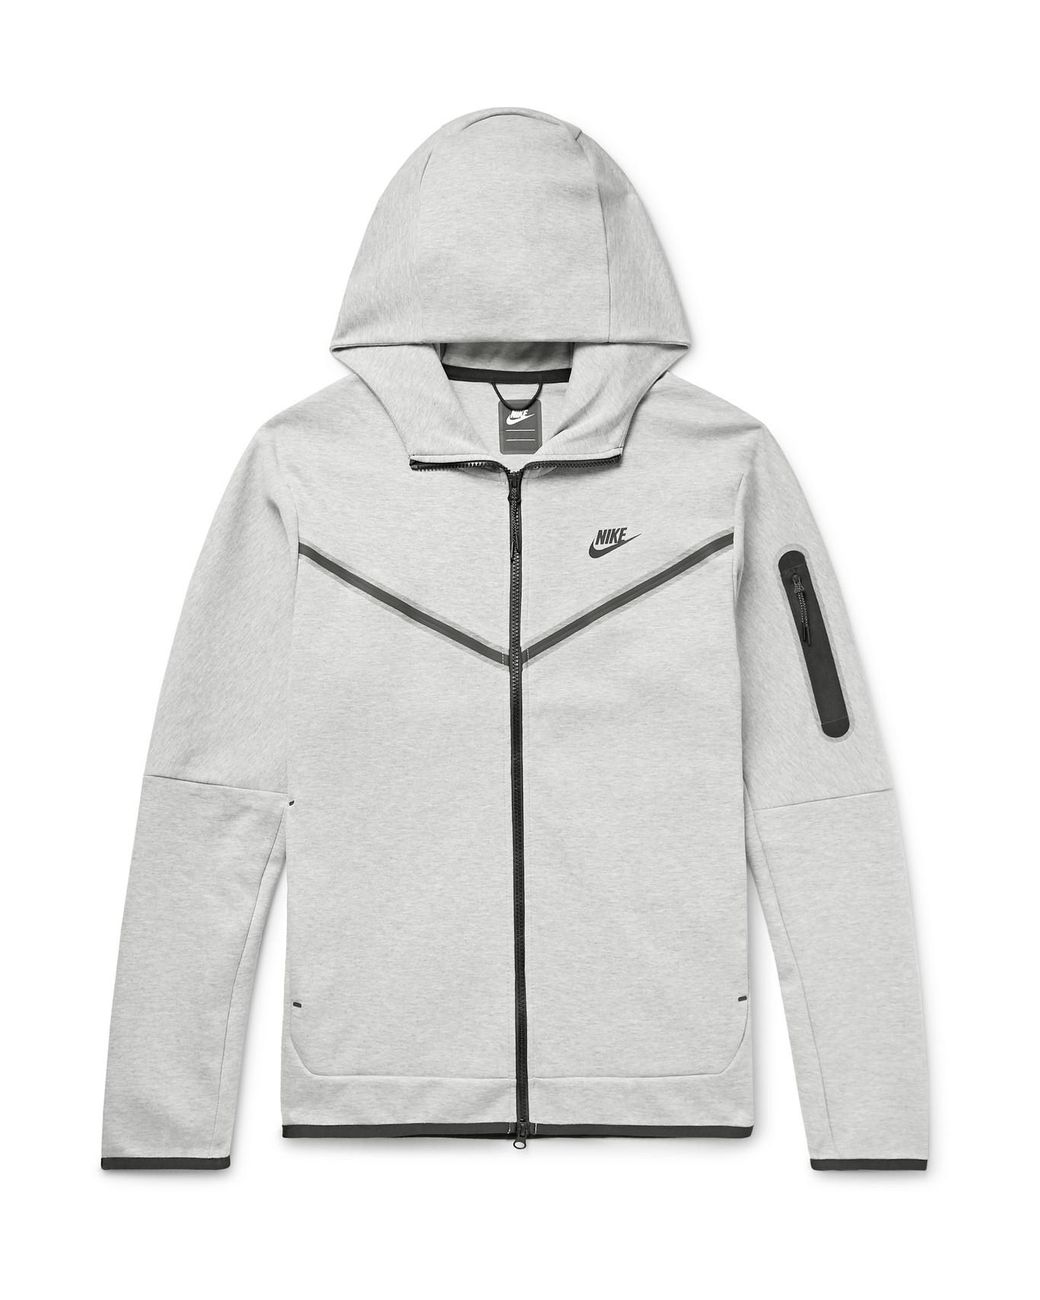 Nike Sportswear Mélange Tech Fleece Zip-up Hoodie in Gray for Men - Lyst